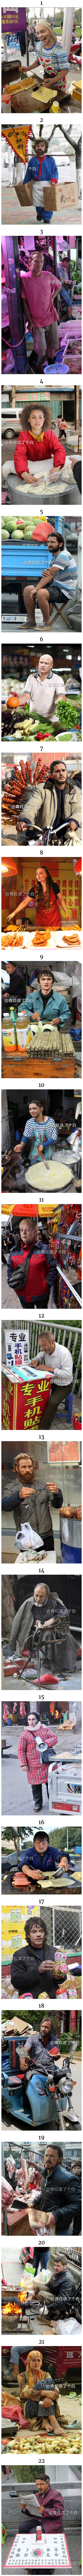 Pretvorili su likove iz serije Game of Thrones u kineske ulične prodavače i to je presmiješno